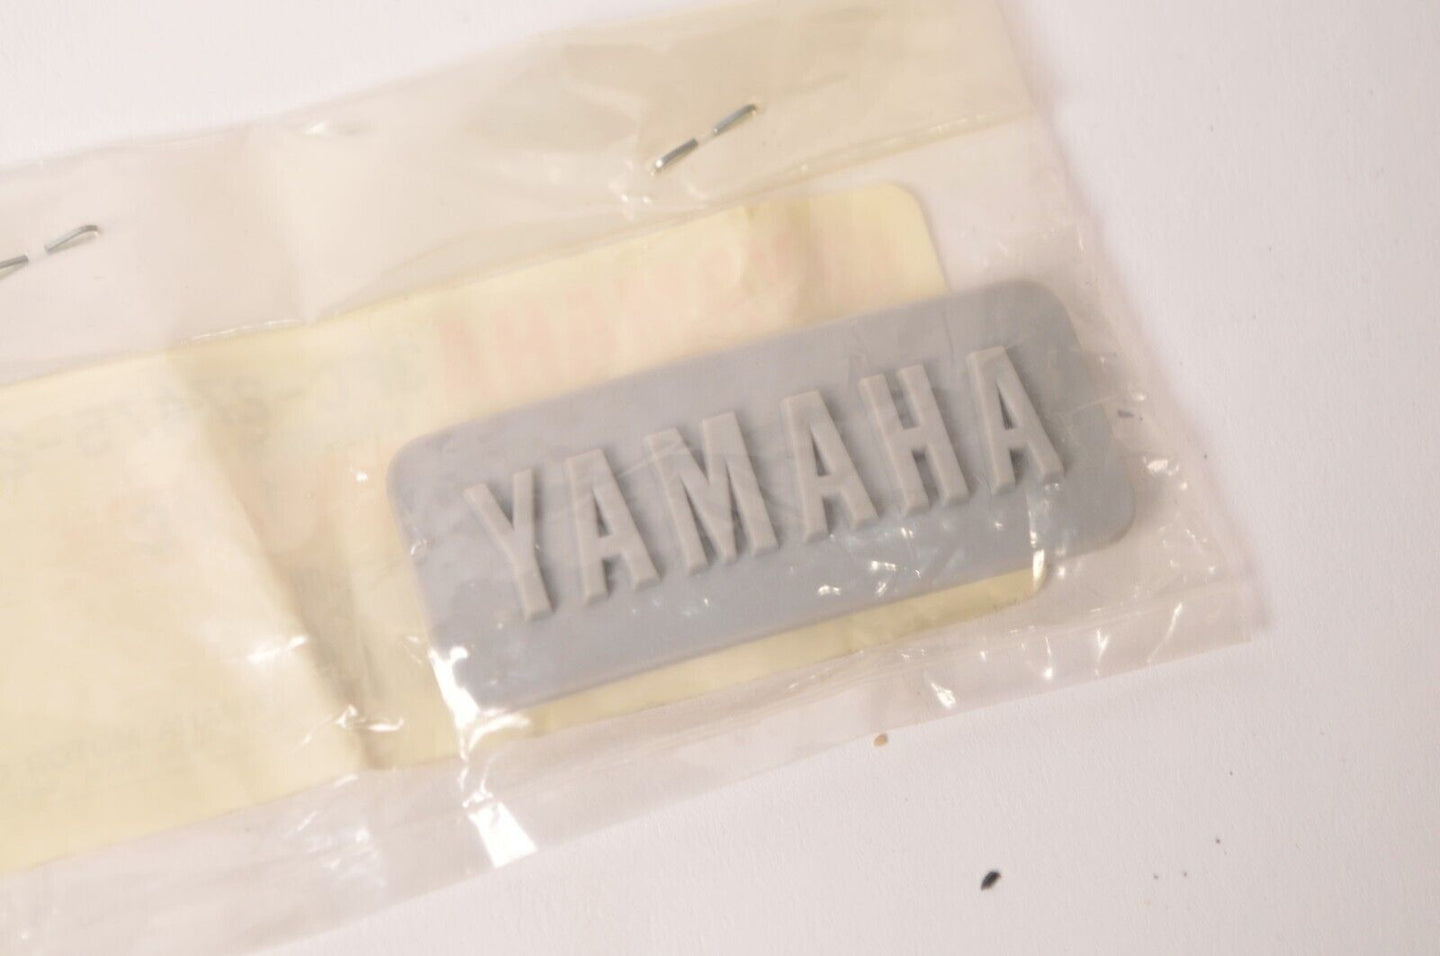 Genuine Yamaha Emblem Cap Solid Fine Silver - JOG CY50 92-95  | 3FC-27475-20